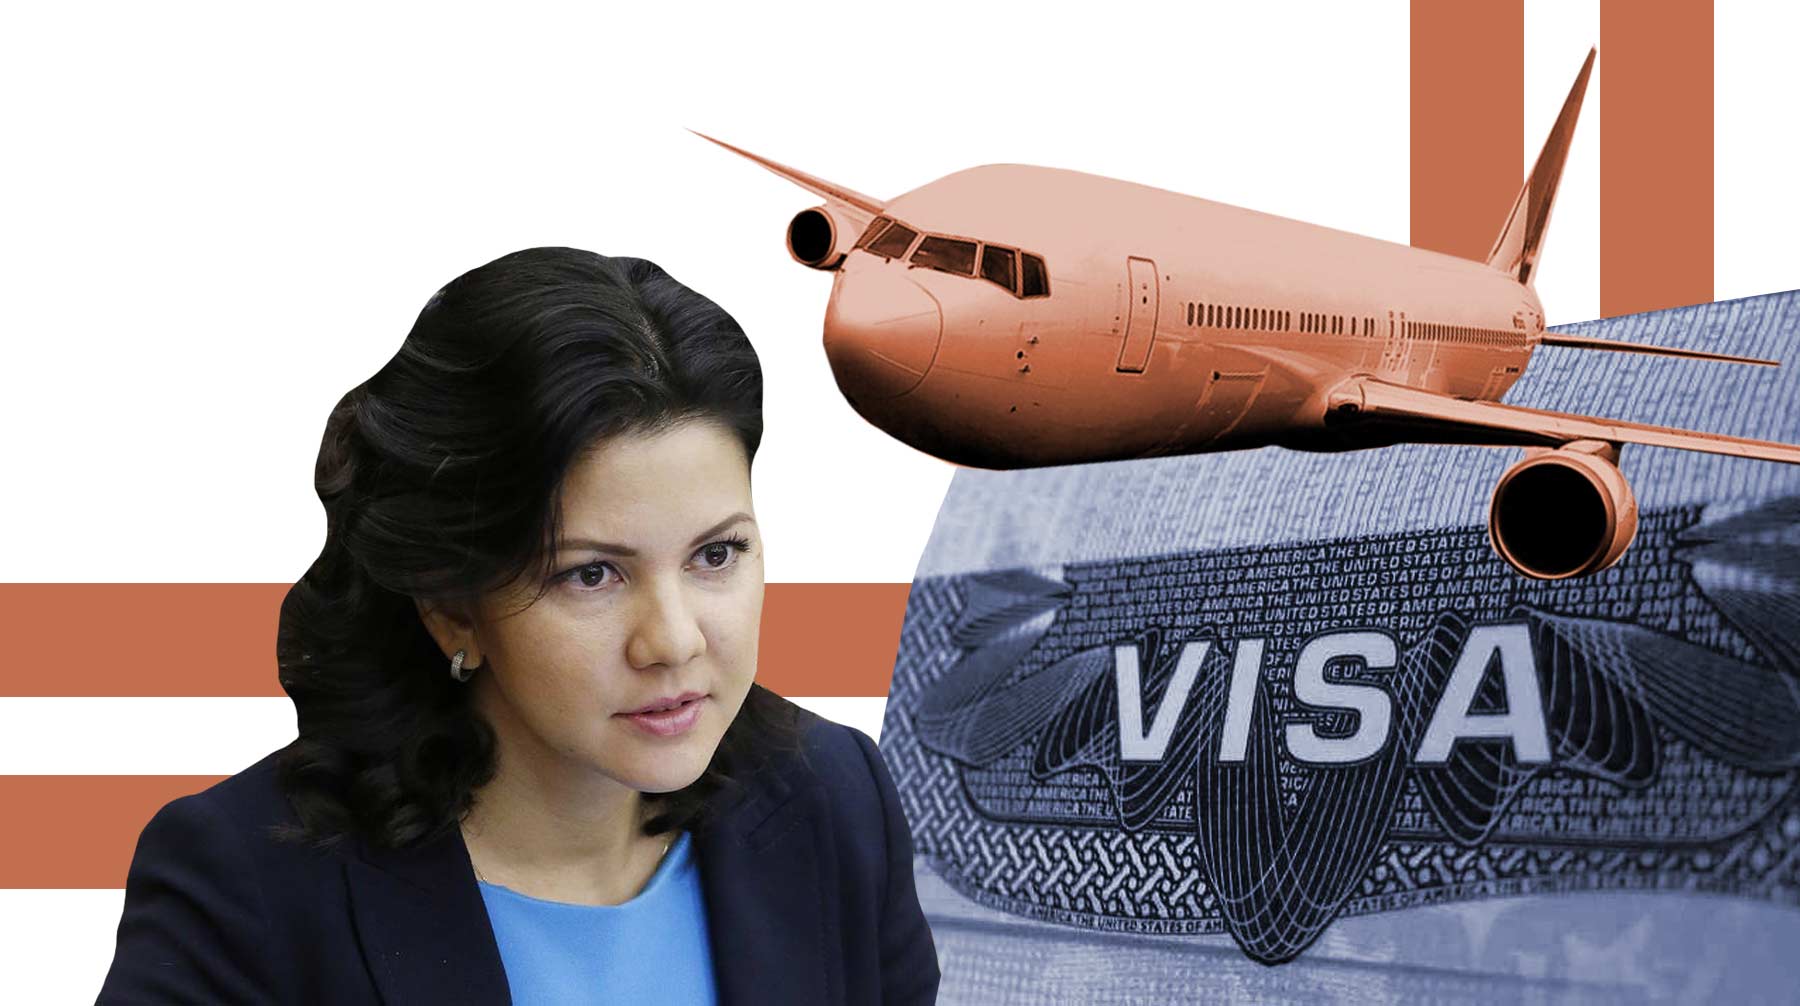 Коллеги Инги Юмашевой недоумевают, почему она была с гражданским паспортом и пожаловалась на допрос дипломатам, а не в Думу Коллаж: © Daily Storm